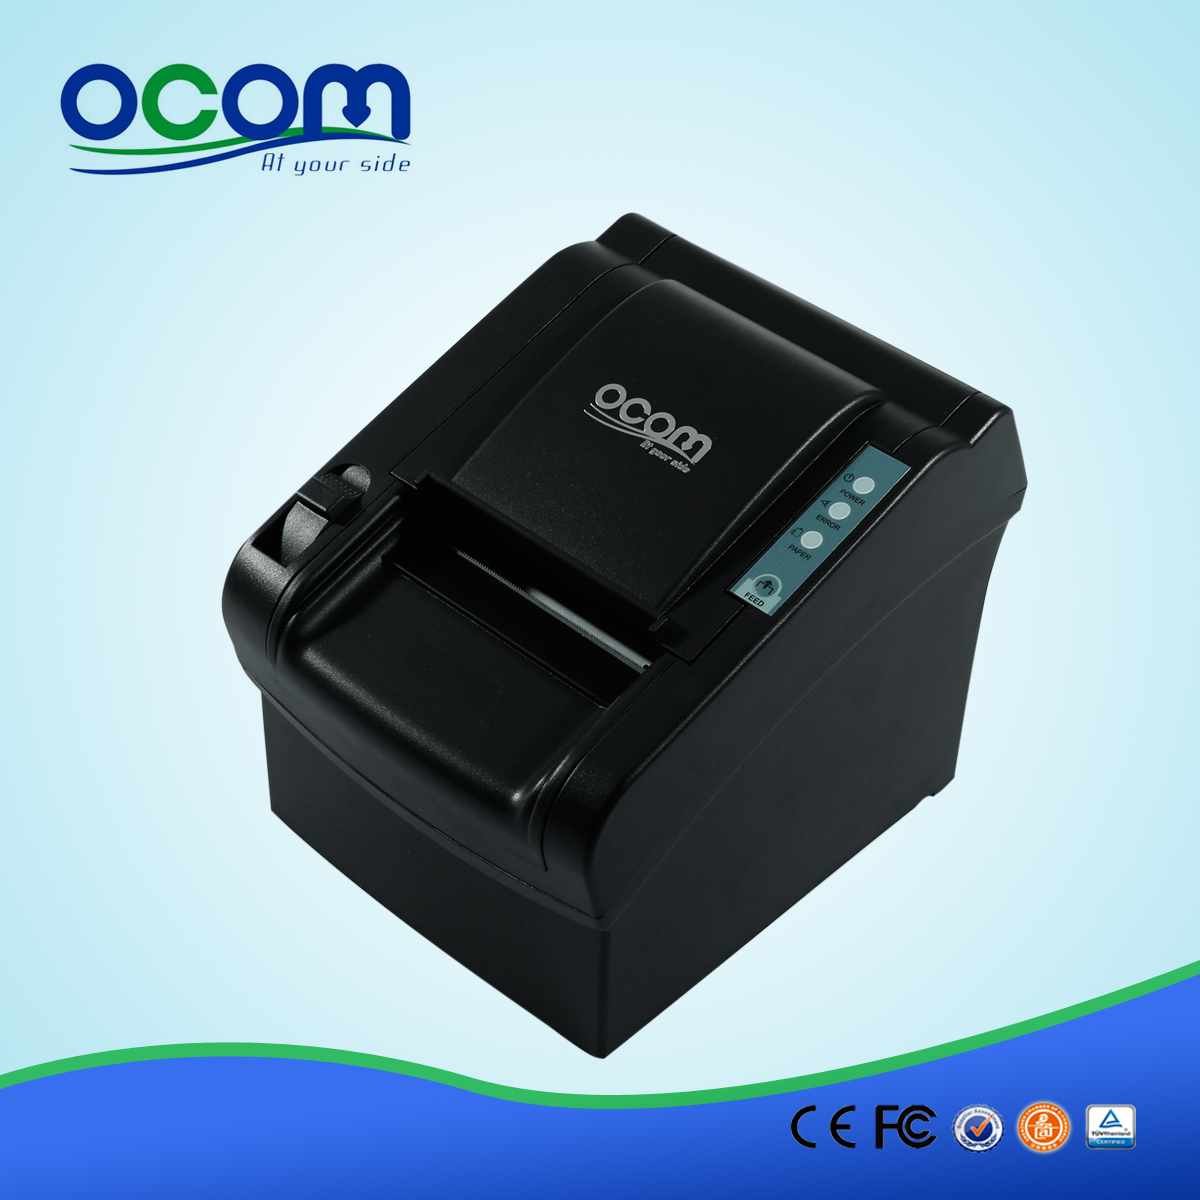 OCPP-802 80 millimetri impatto stampanti termiche per sistema POS